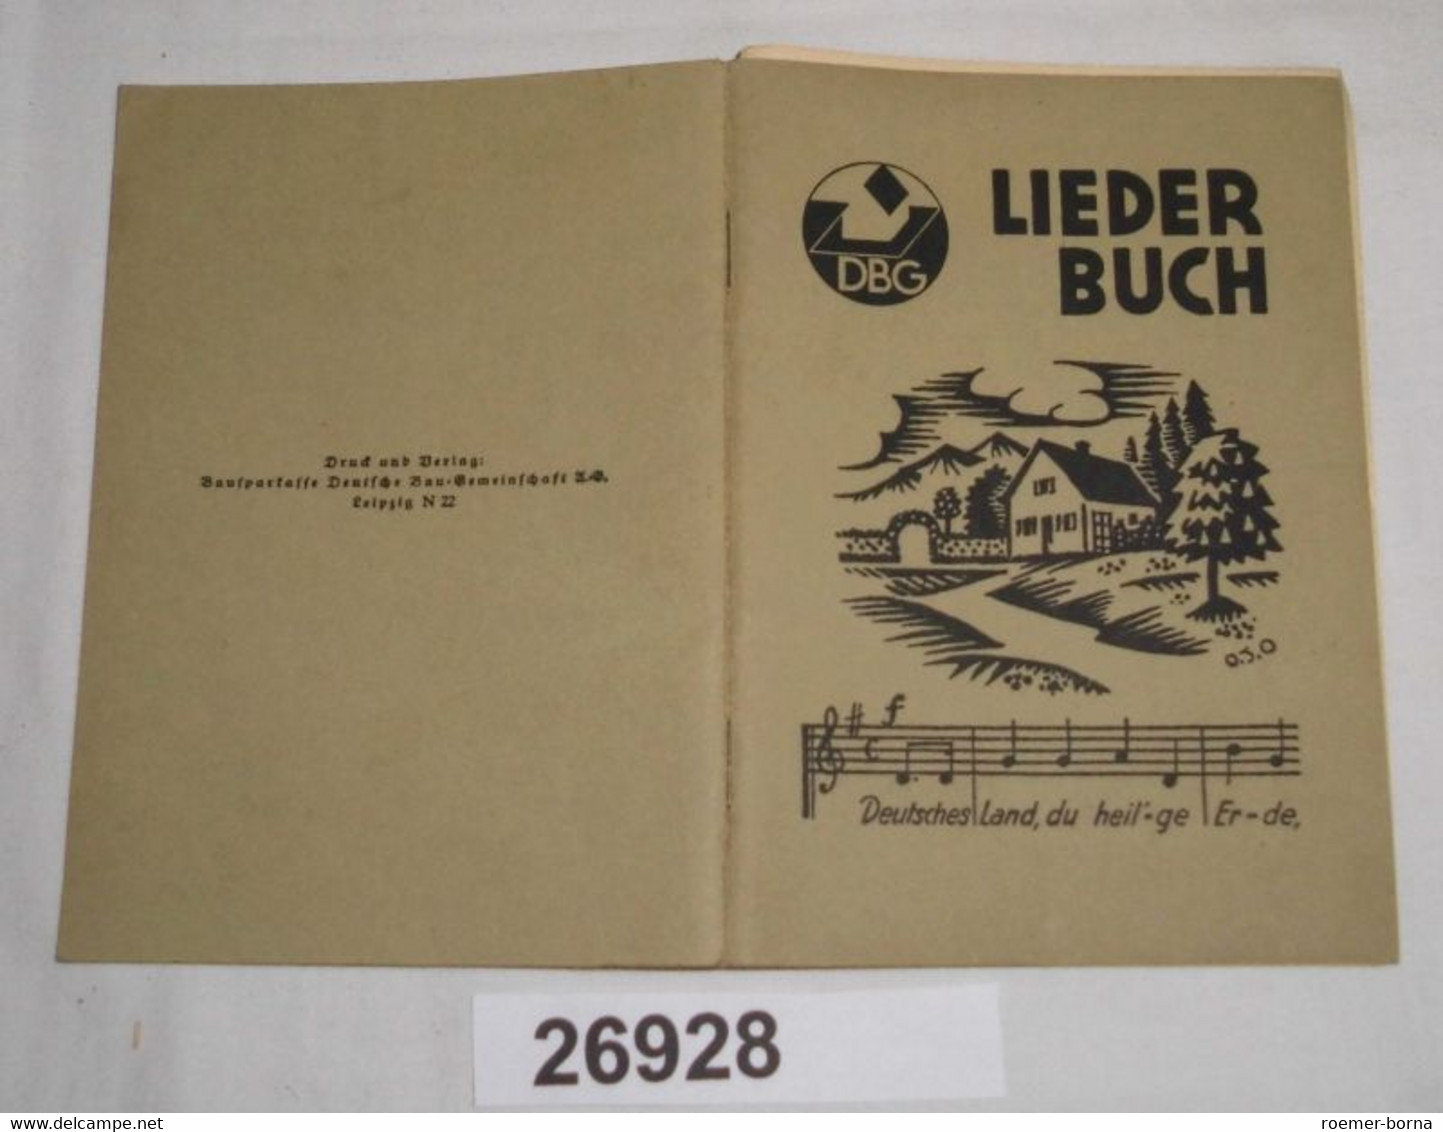 DBG Liederbuch - Musique